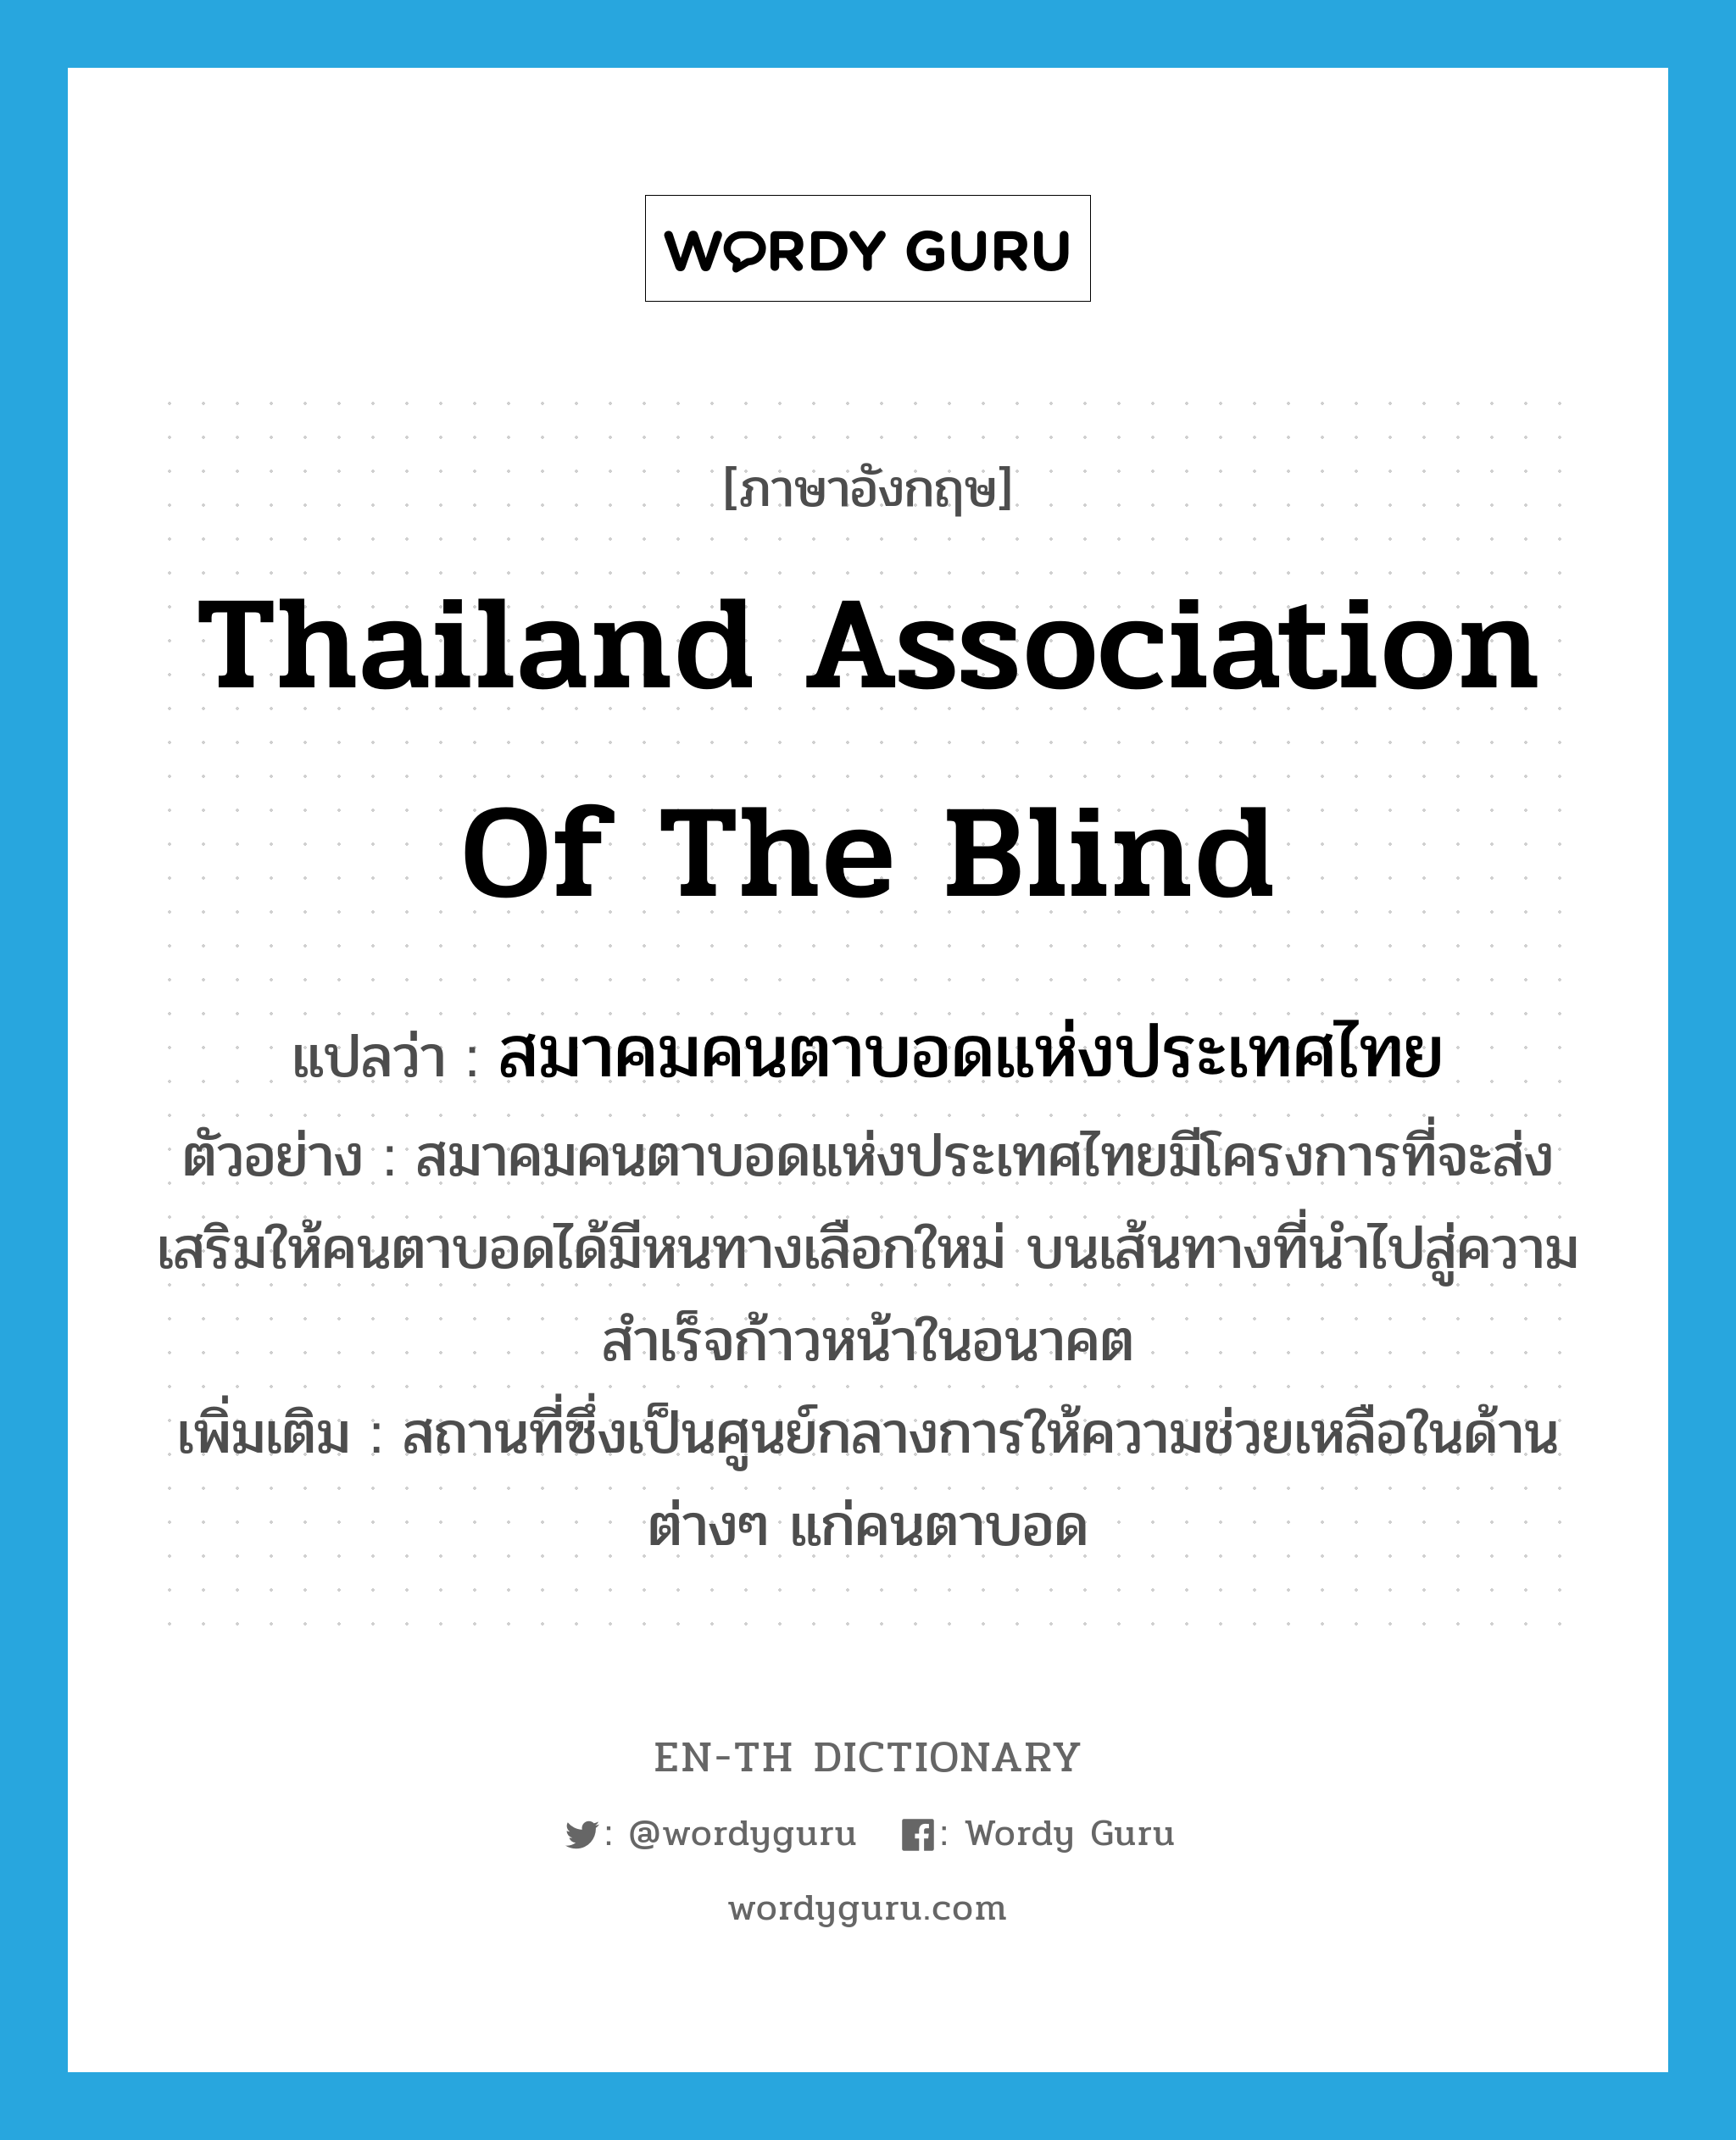 สมาคมคนตาบอดแห่งประเทศไทย ภาษาอังกฤษ?, คำศัพท์ภาษาอังกฤษ สมาคมคนตาบอดแห่งประเทศไทย แปลว่า Thailand Association of the Blind ประเภท N ตัวอย่าง สมาคมคนตาบอดแห่งประเทศไทยมีโครงการที่จะส่งเสริมให้คนตาบอดได้มีหนทางเลือกใหม่ บนเส้นทางที่นำไปสู่ความสำเร็จก้าวหน้าในอนาคต เพิ่มเติม สถานที่ซึ่งเป็นศูนย์กลางการให้ความช่วยเหลือในด้านต่างๆ แก่คนตาบอด หมวด N